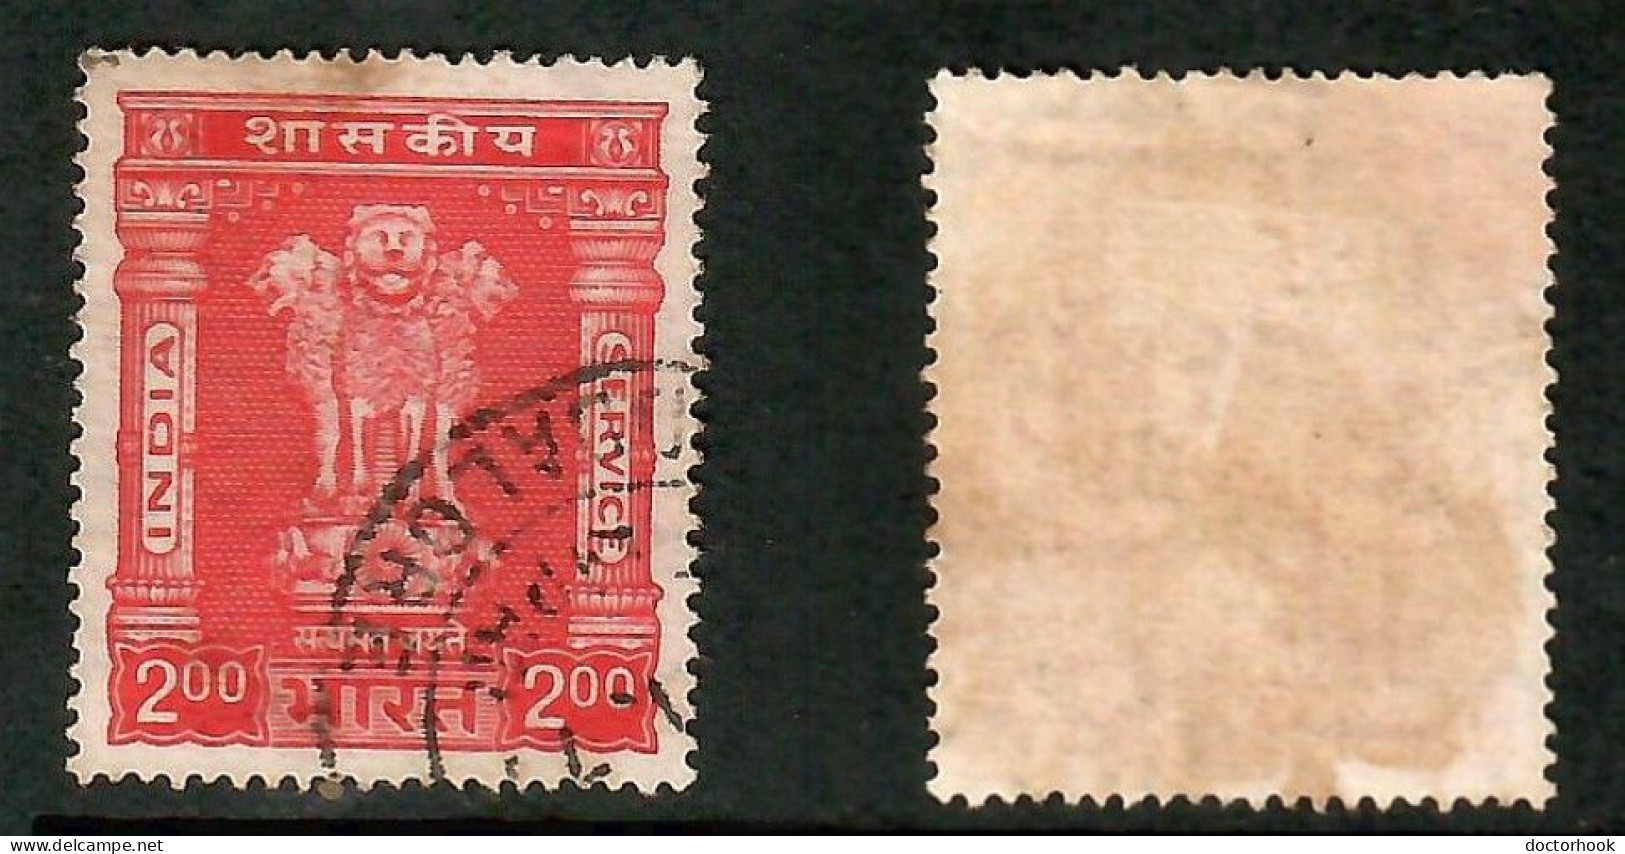 INDIA   Scott # O 183 USED (CONDITION AS PER SCAN) (Stamp Scan # 991-6) - Francobolli Di Servizio